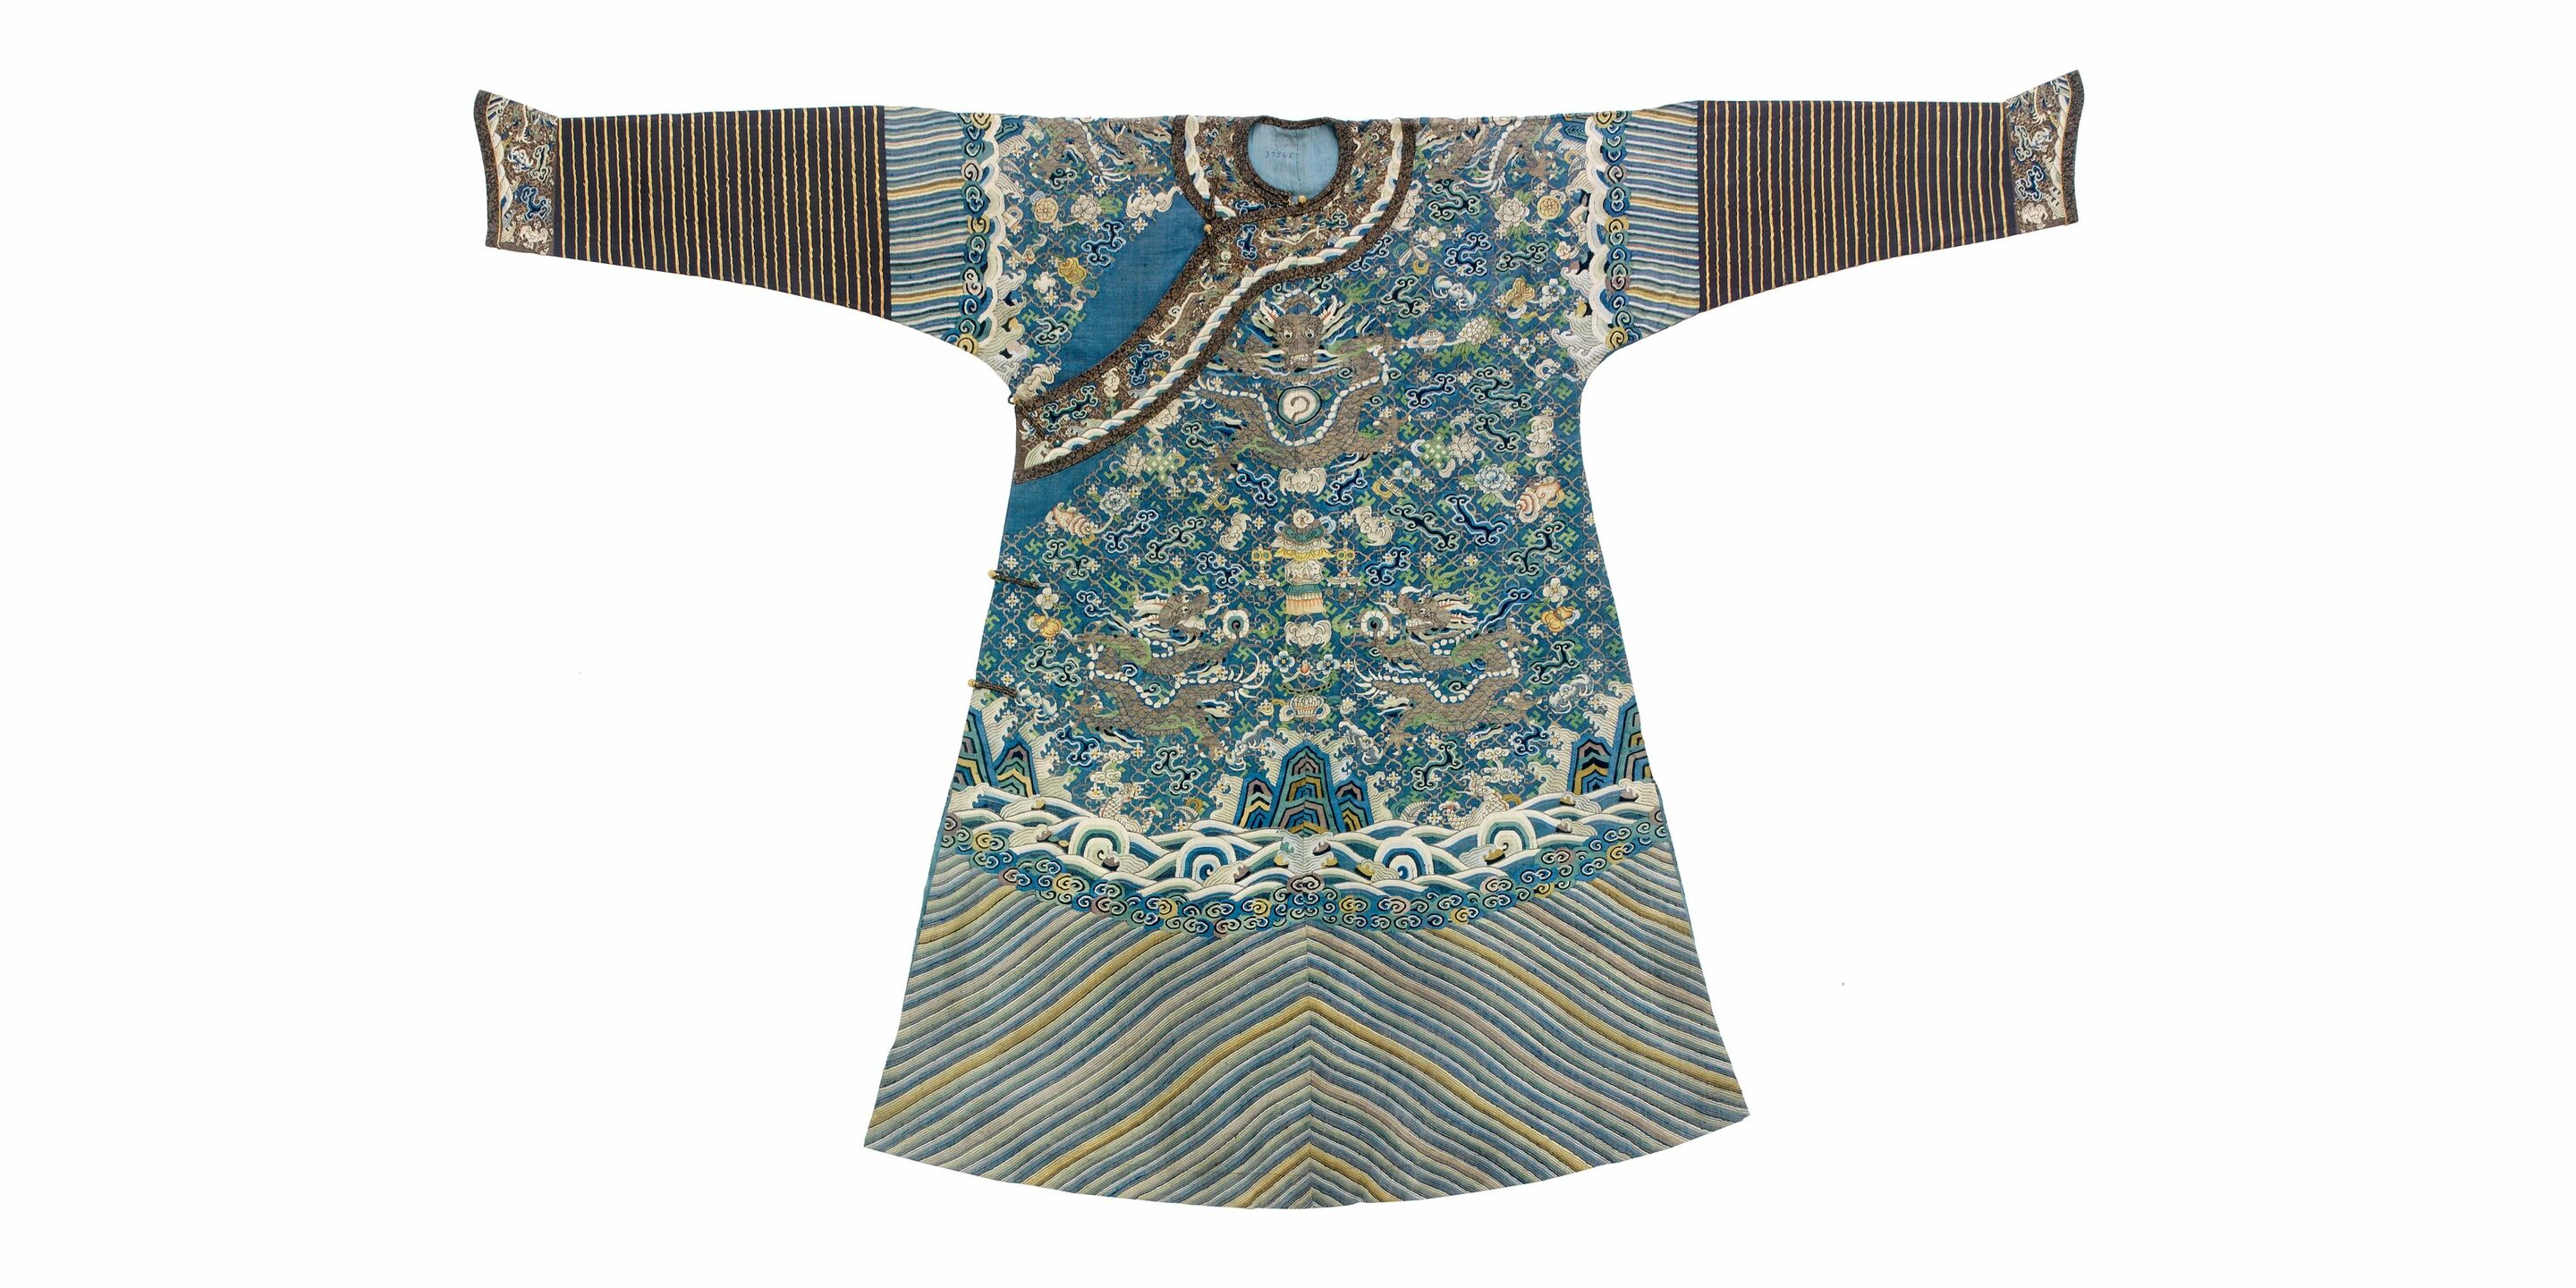 Robe de cour masculine semi-formelle, ou *jifu*, Chine, dynastie Qing, vers 1800-1830. © © musée des Tissus – Sylvain Pretto